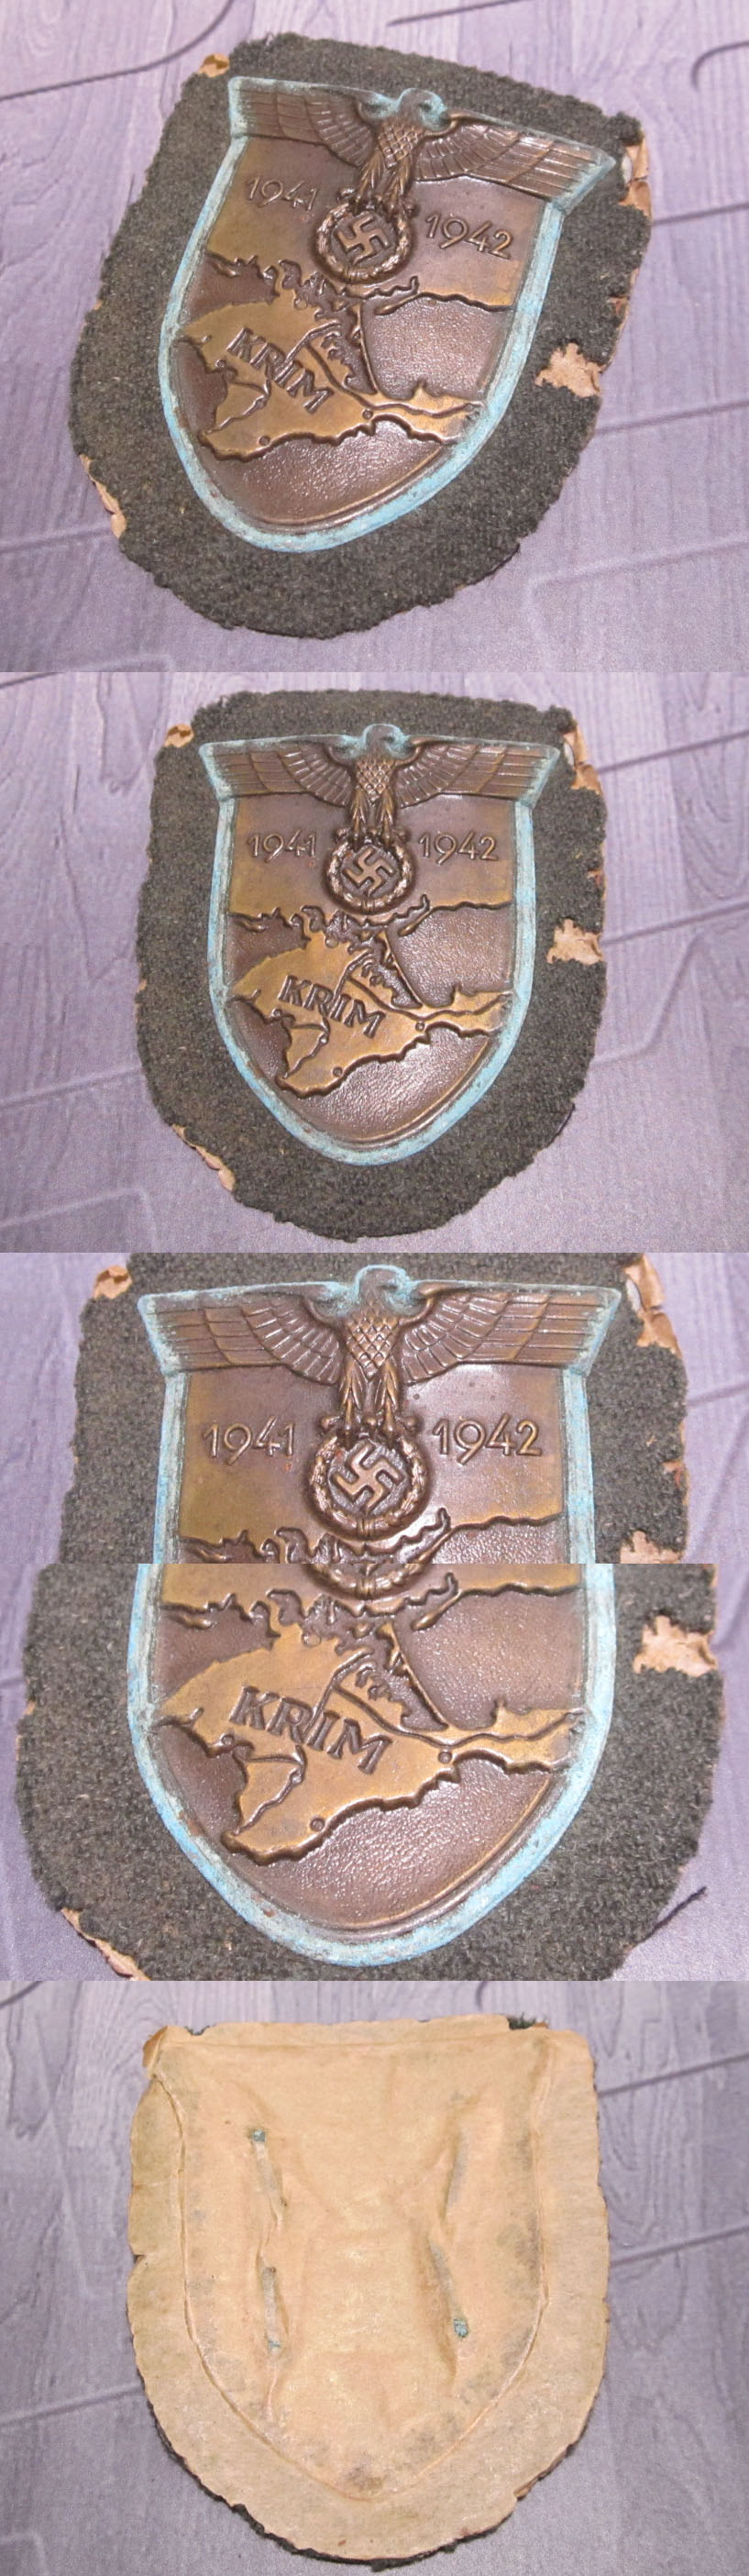 Krim Arm Shield